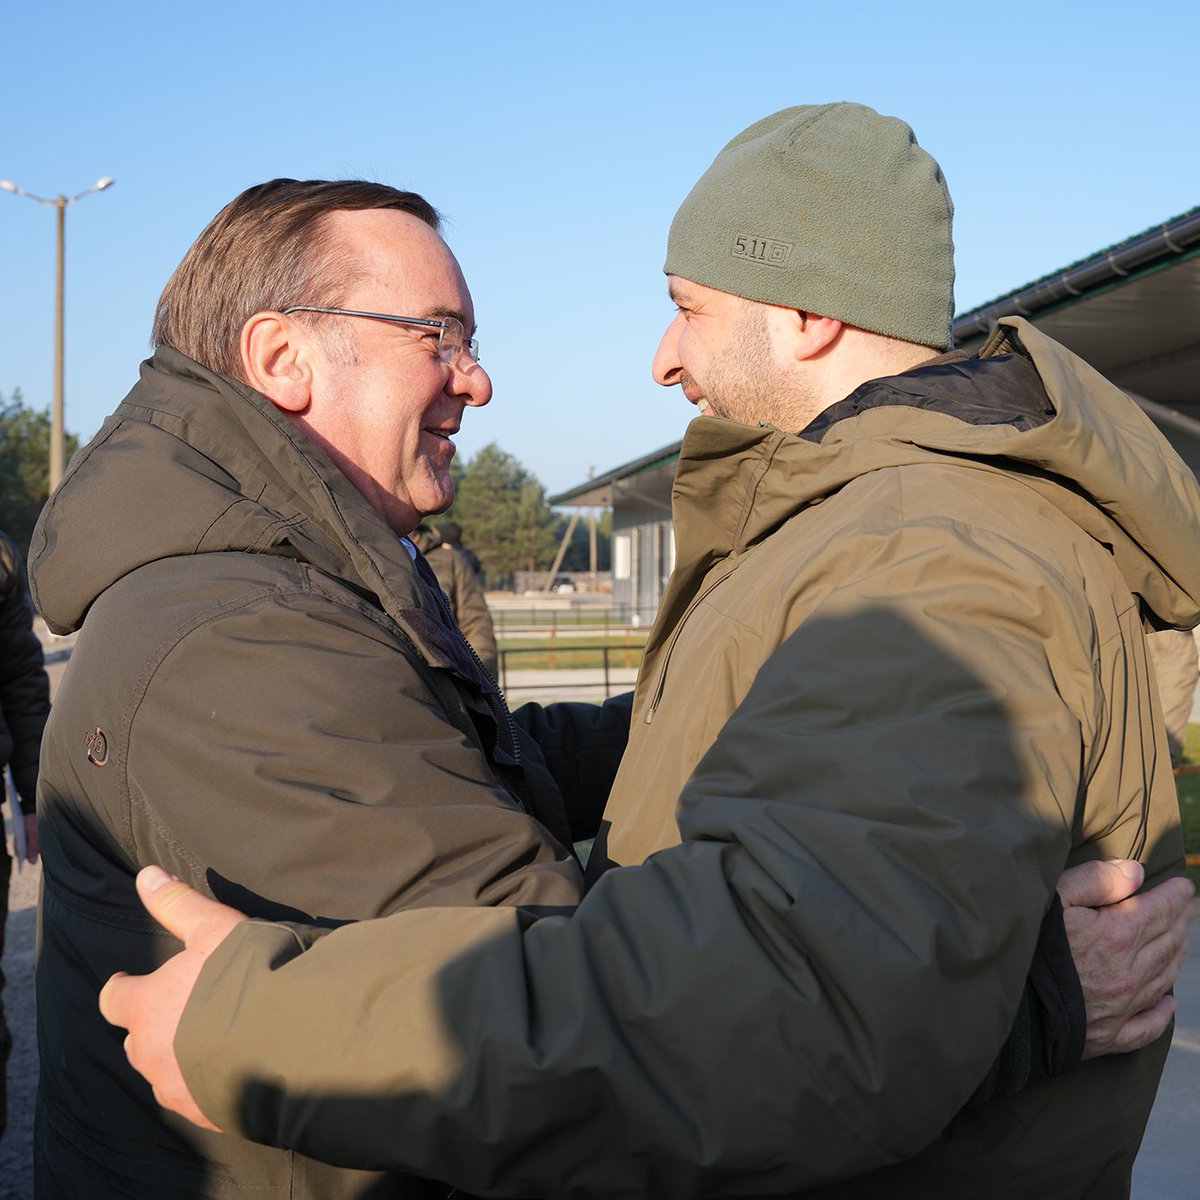 Verteidigungsminister Pistorius und sein ukrainischer Amtskollege Umerov umarmen sich zur Begrüßung.  Авторство: Бундесвер/Шлаг